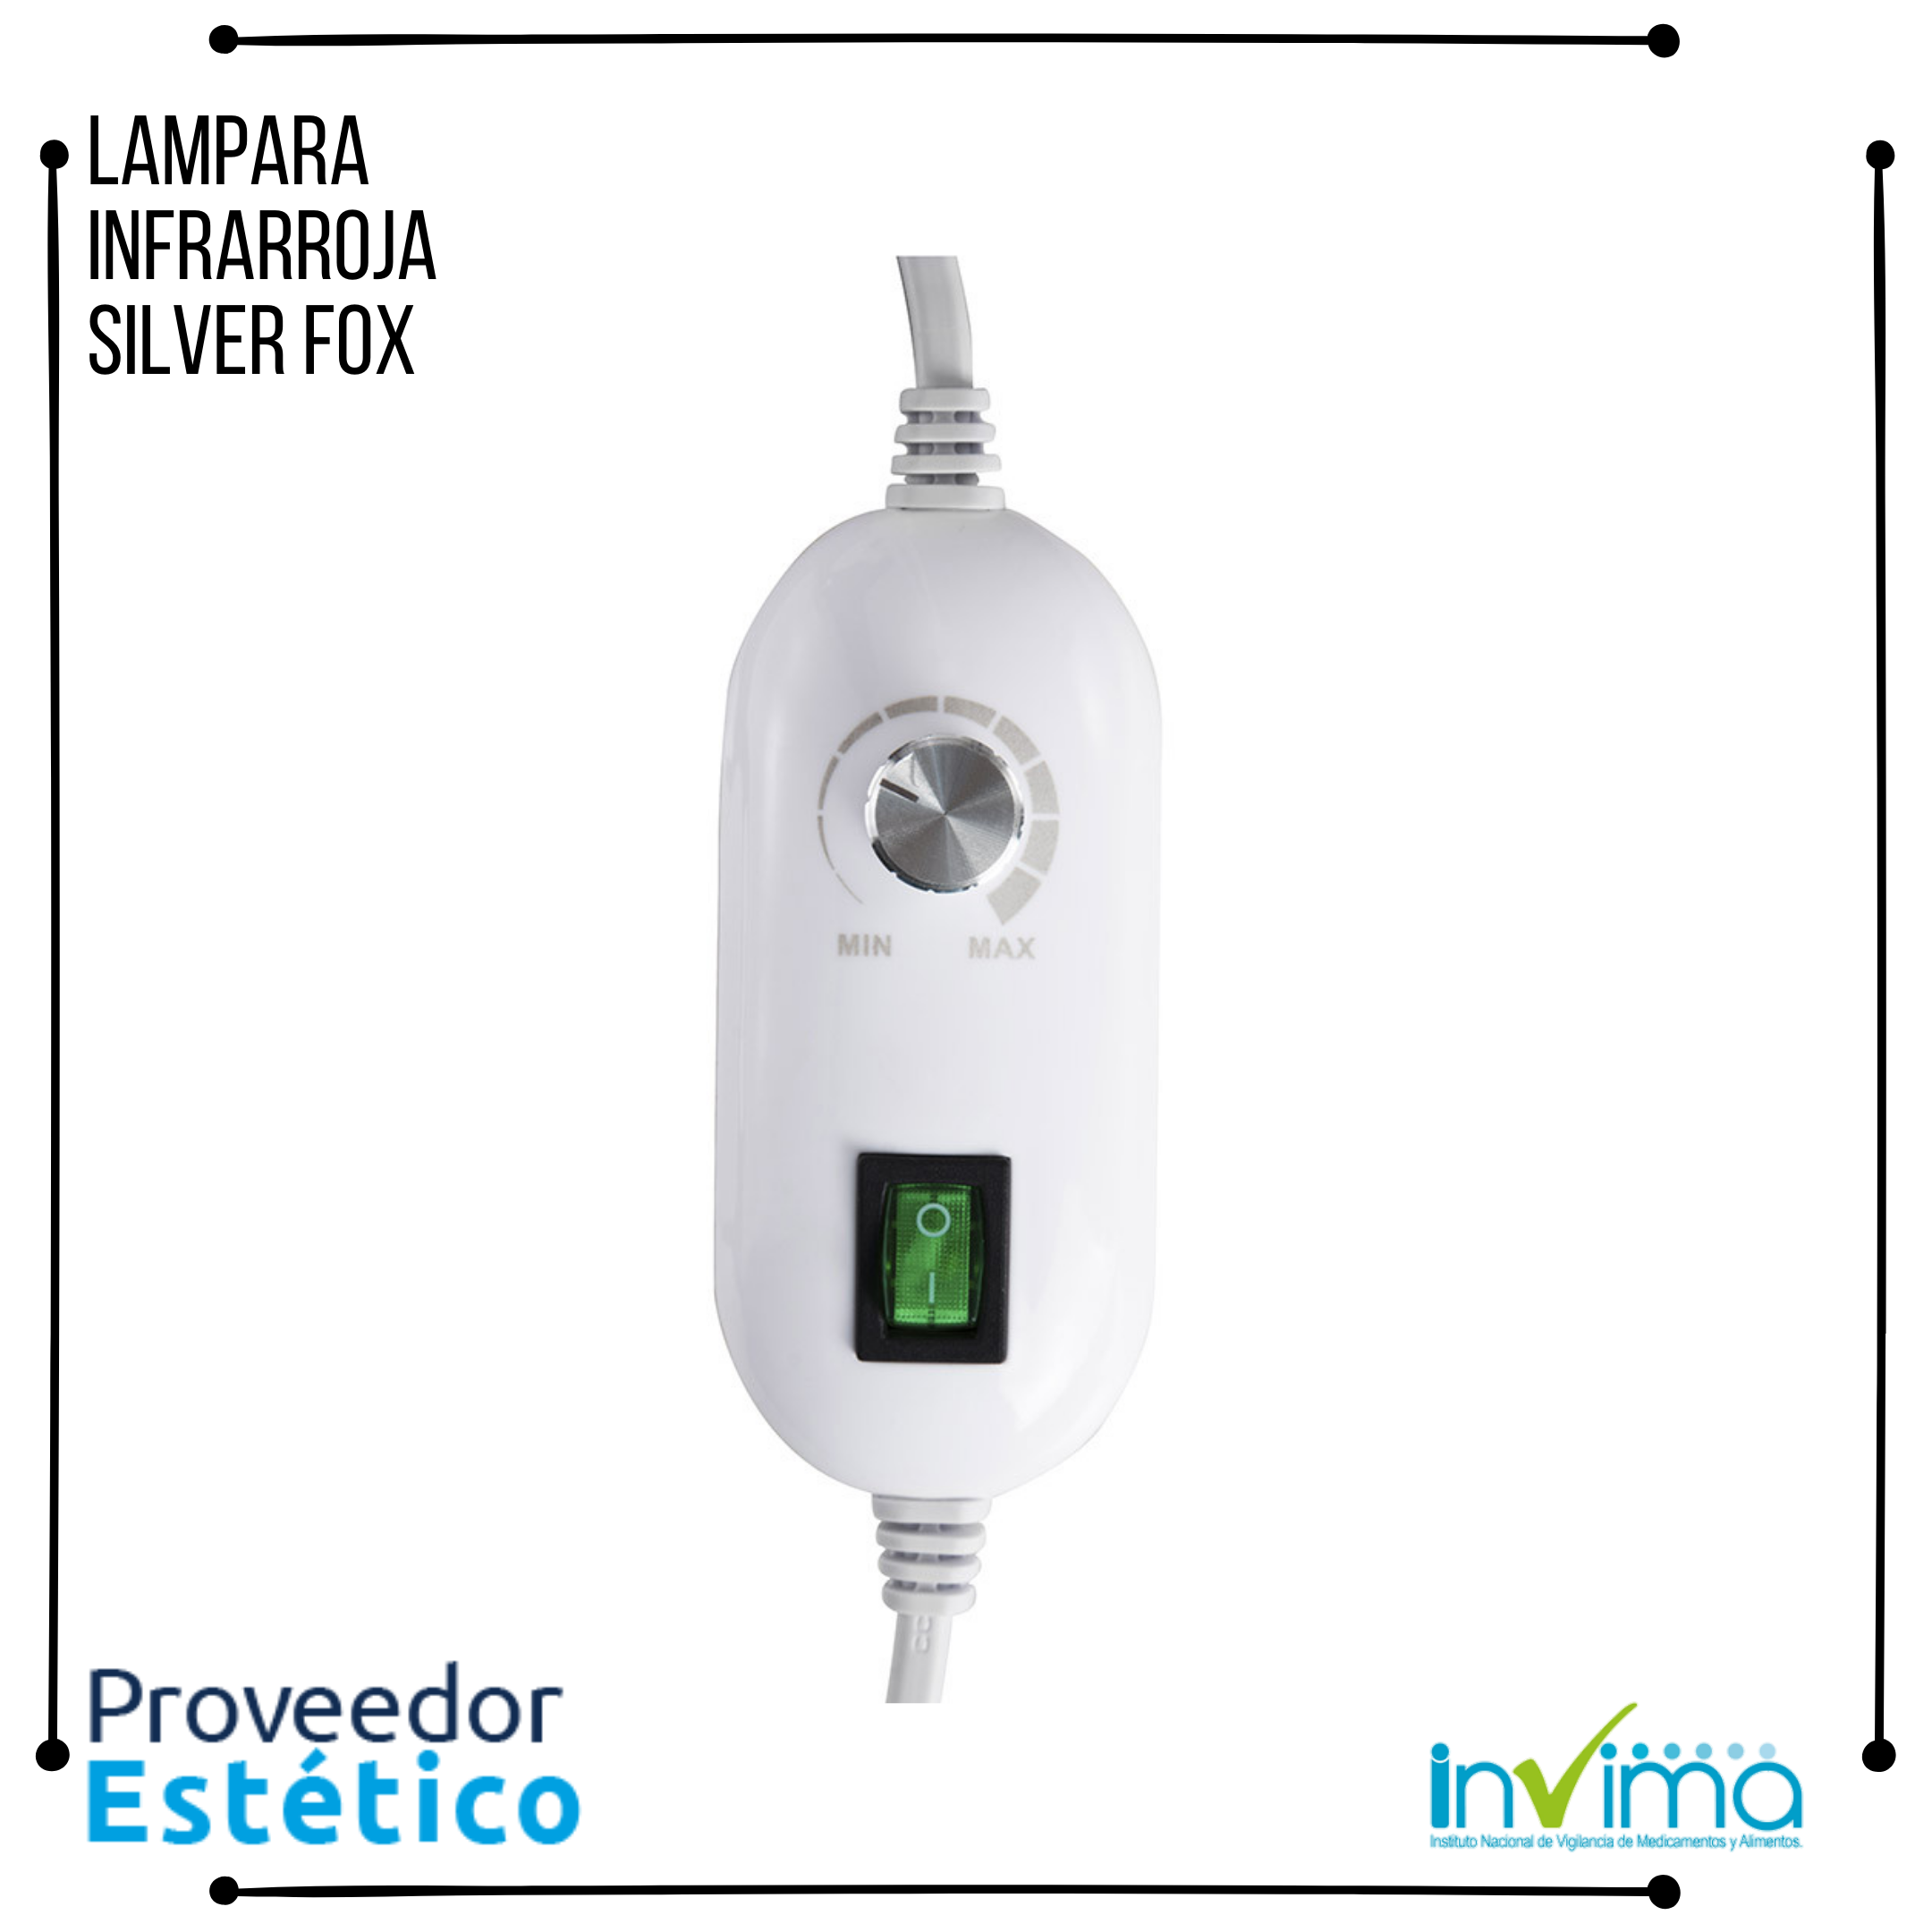 Lampara Infrarroja Silver Fox 1003